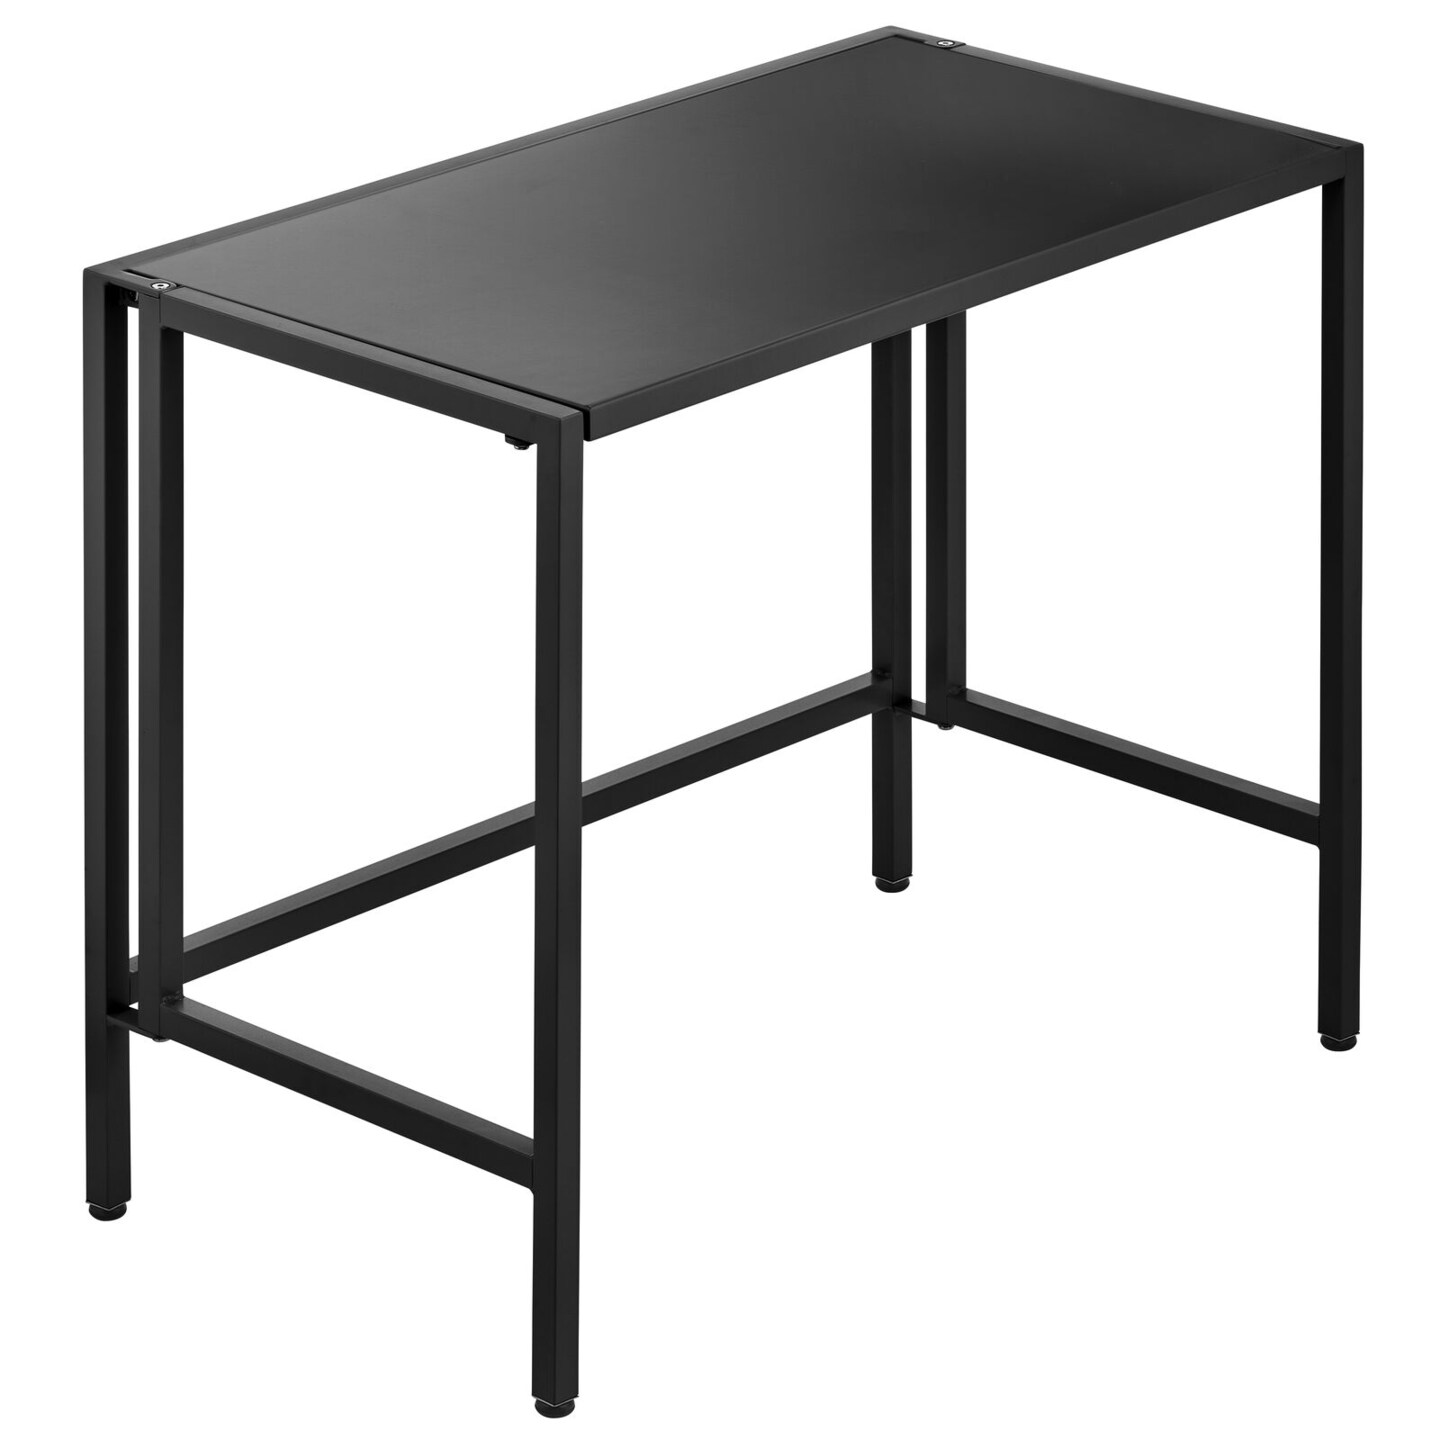 mDesign Folding Desk Adjustable Compact Workstation Metal Table